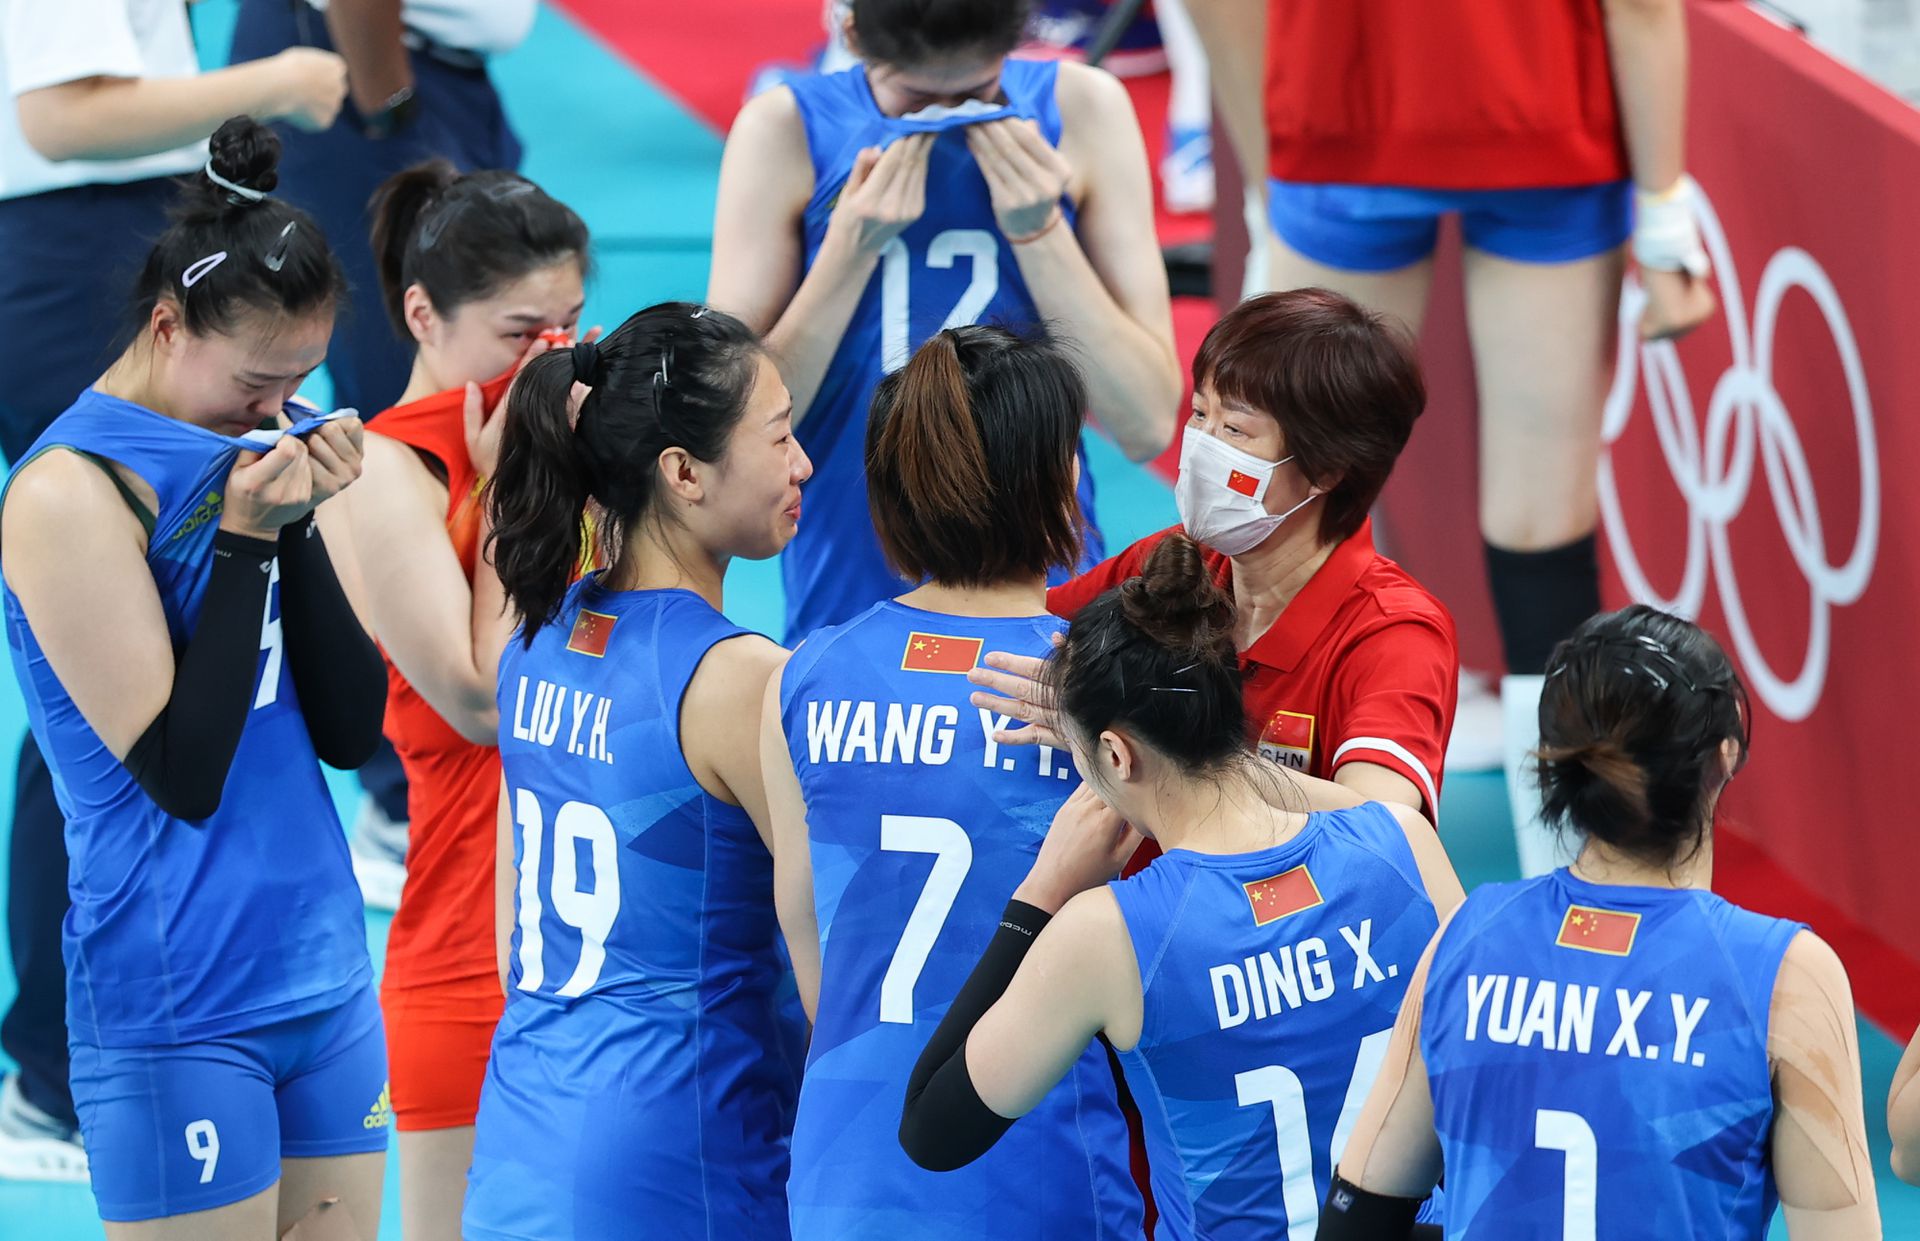 北京時間8月2日，東京奧運會女排小組賽末輪，中國女排對陣阿根廷女排，兩隊均已提前出局，本場女排姑娘們為榮譽而戰!本場也是中國女排功勳主帥郎平指導的謝幕戰，自2013年擔任女排國家隊主教練以來，率領中國女排獲得2屆女排世界盃冠軍，1次奧運會冠軍，戰功卓著戰績輝煌。郎平指導坦言做出離開的原因之一是自己需要休息，同時也需給年輕教練機會。

中國女排以3-0戰勝阿根廷，以2勝3負結束東京奧運之旅，用勝利告別三冠功勳主帥郎平!新華社圖片